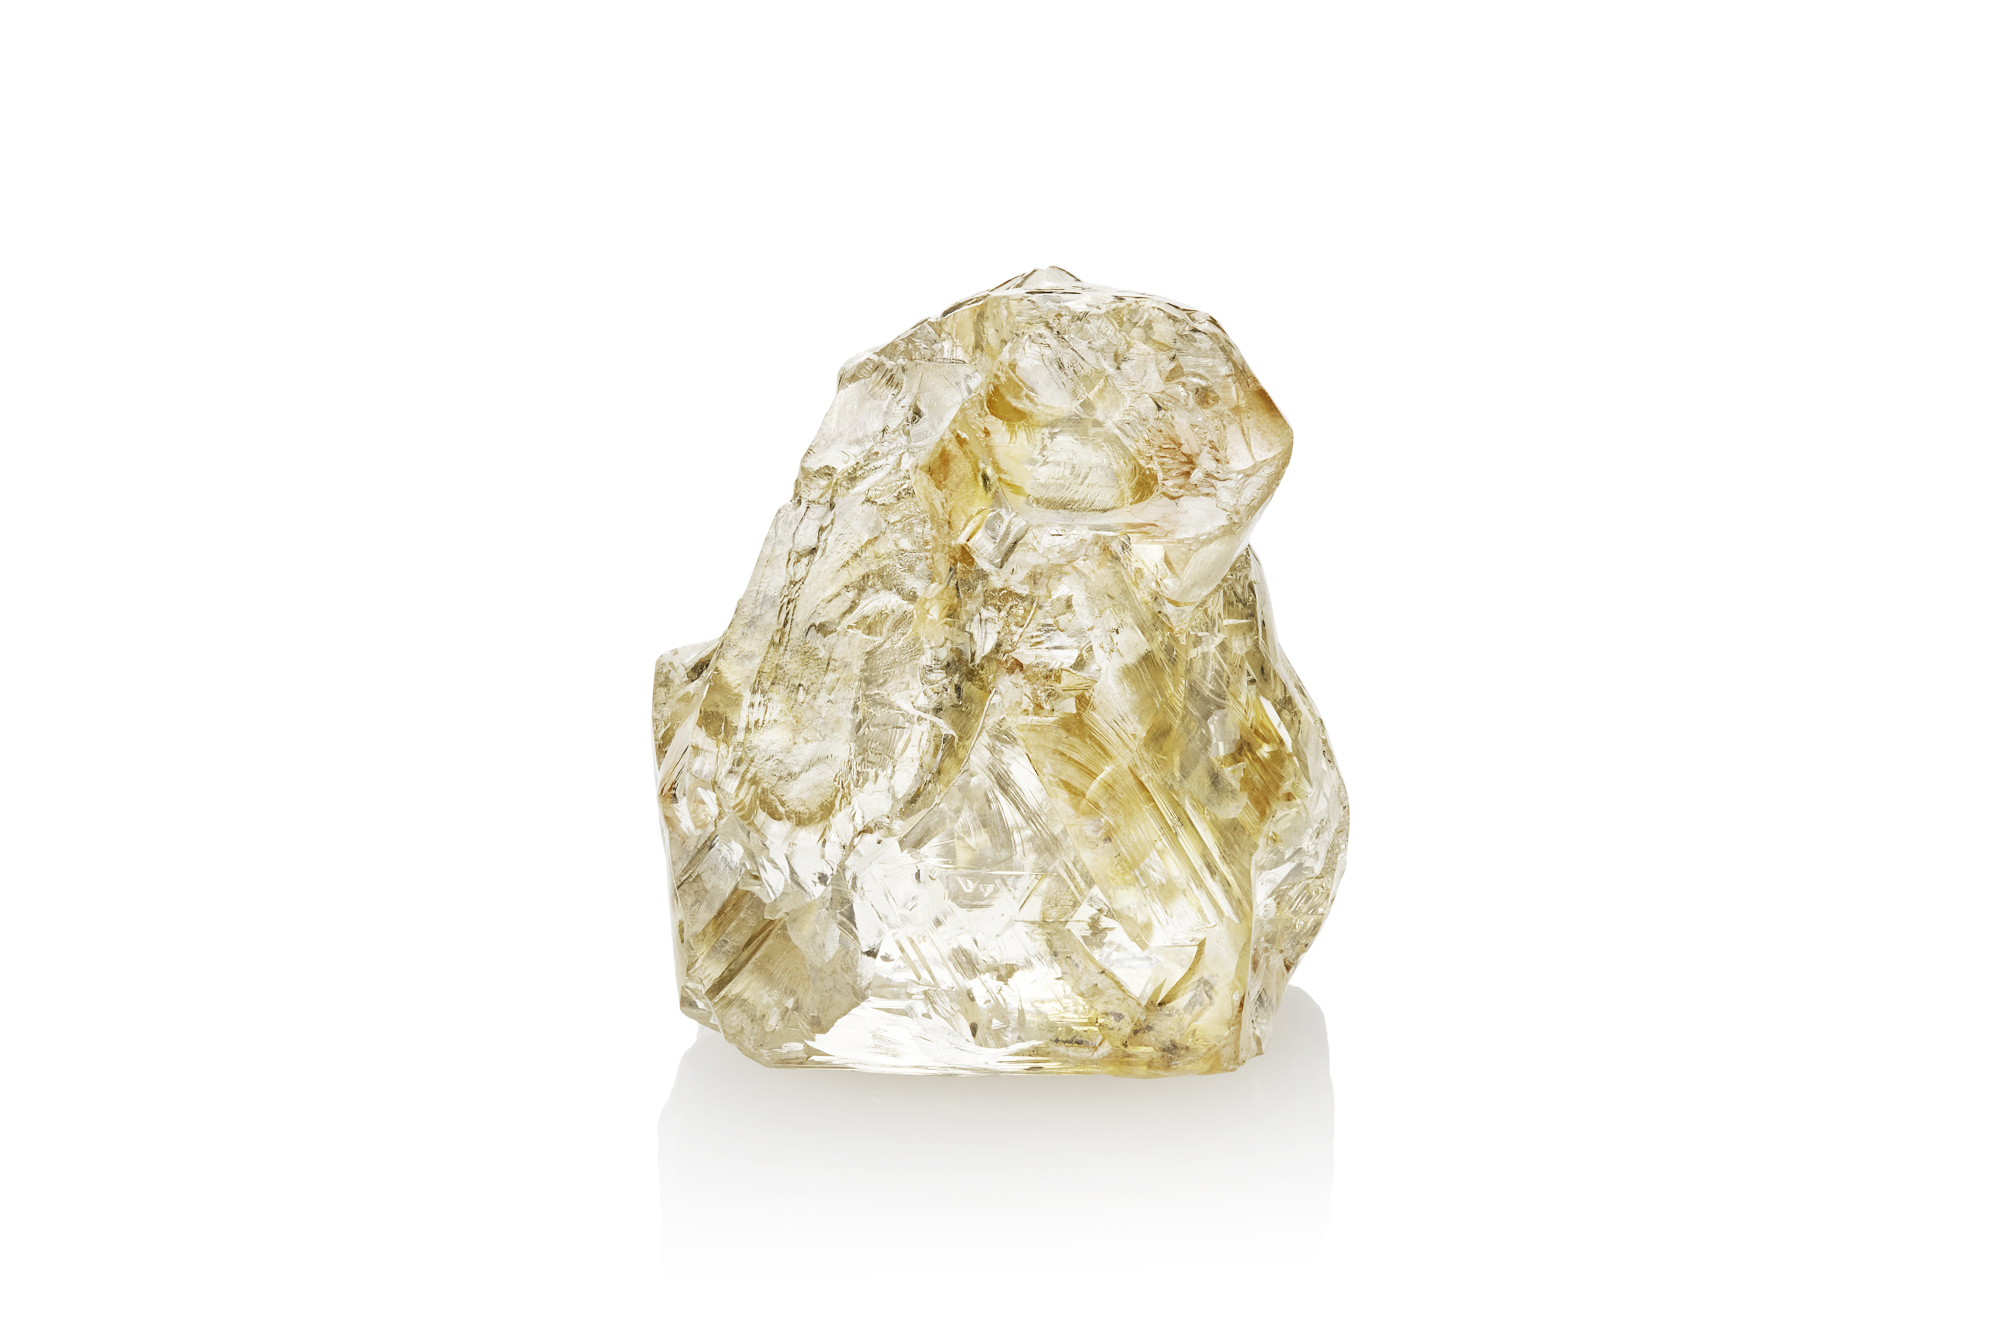 Якутский алмаз получил название Кындыкан в честь героини эвенского фольклора